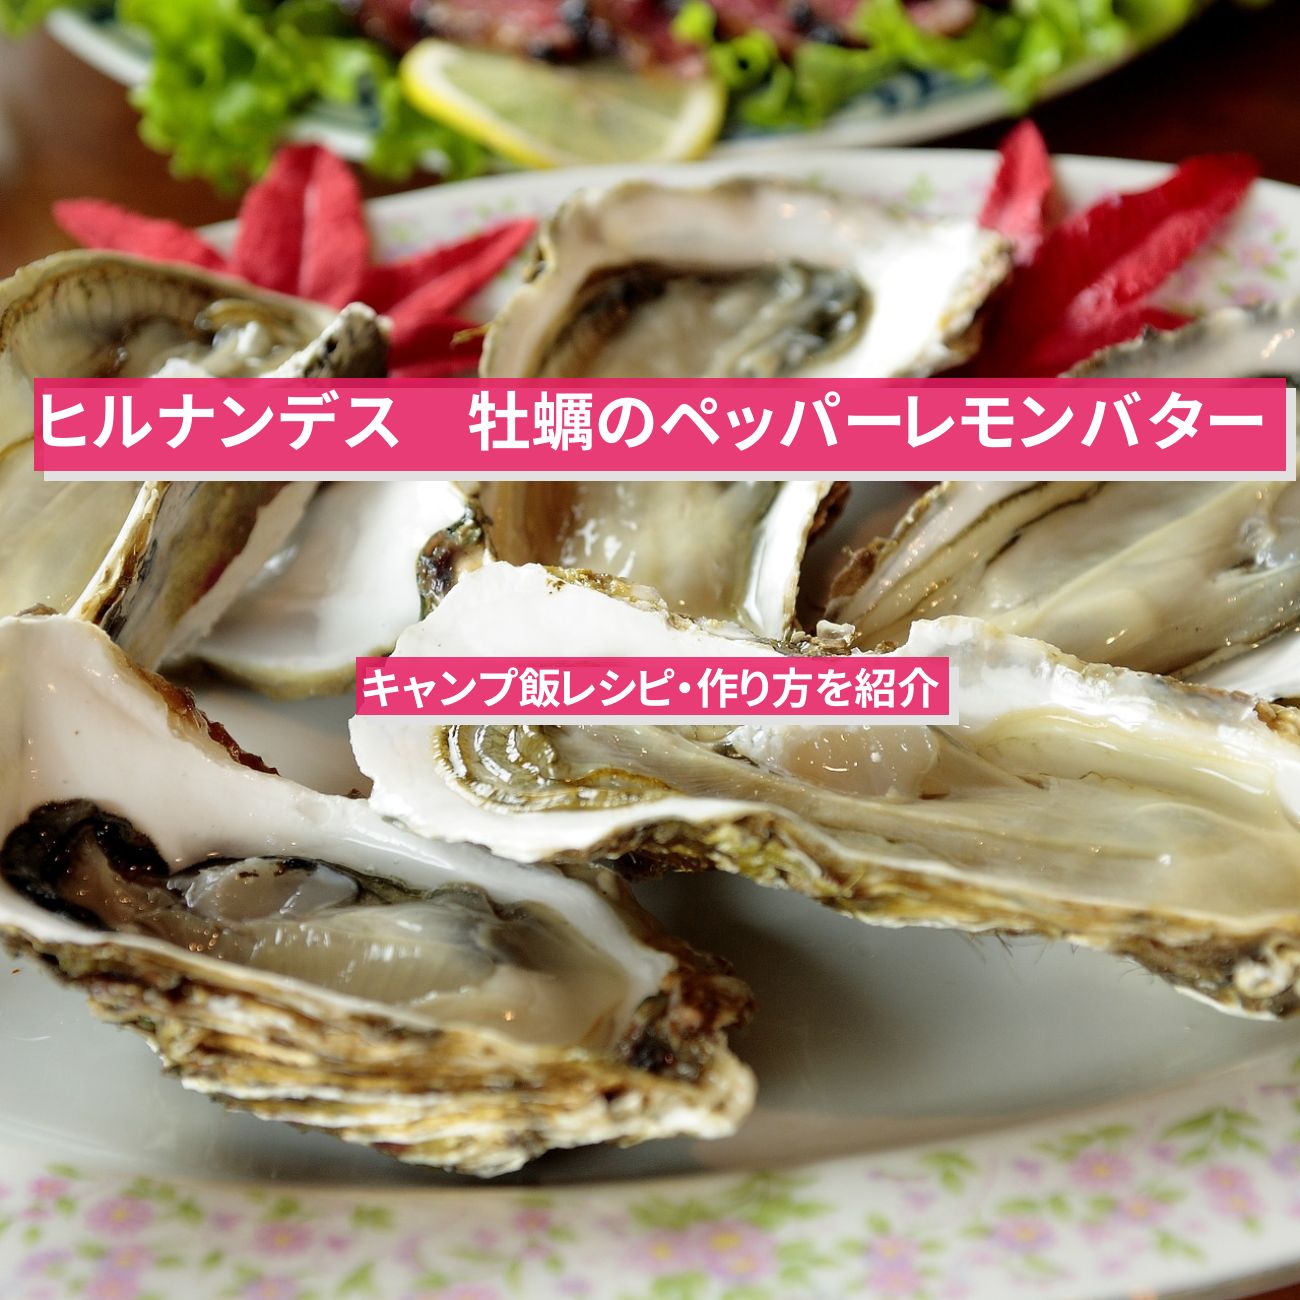 【ヒルナンデス】『牡蠣のペッパーレモンバター』バイきんぐ西村さんキャンプ飯レシピ・作り方を紹介